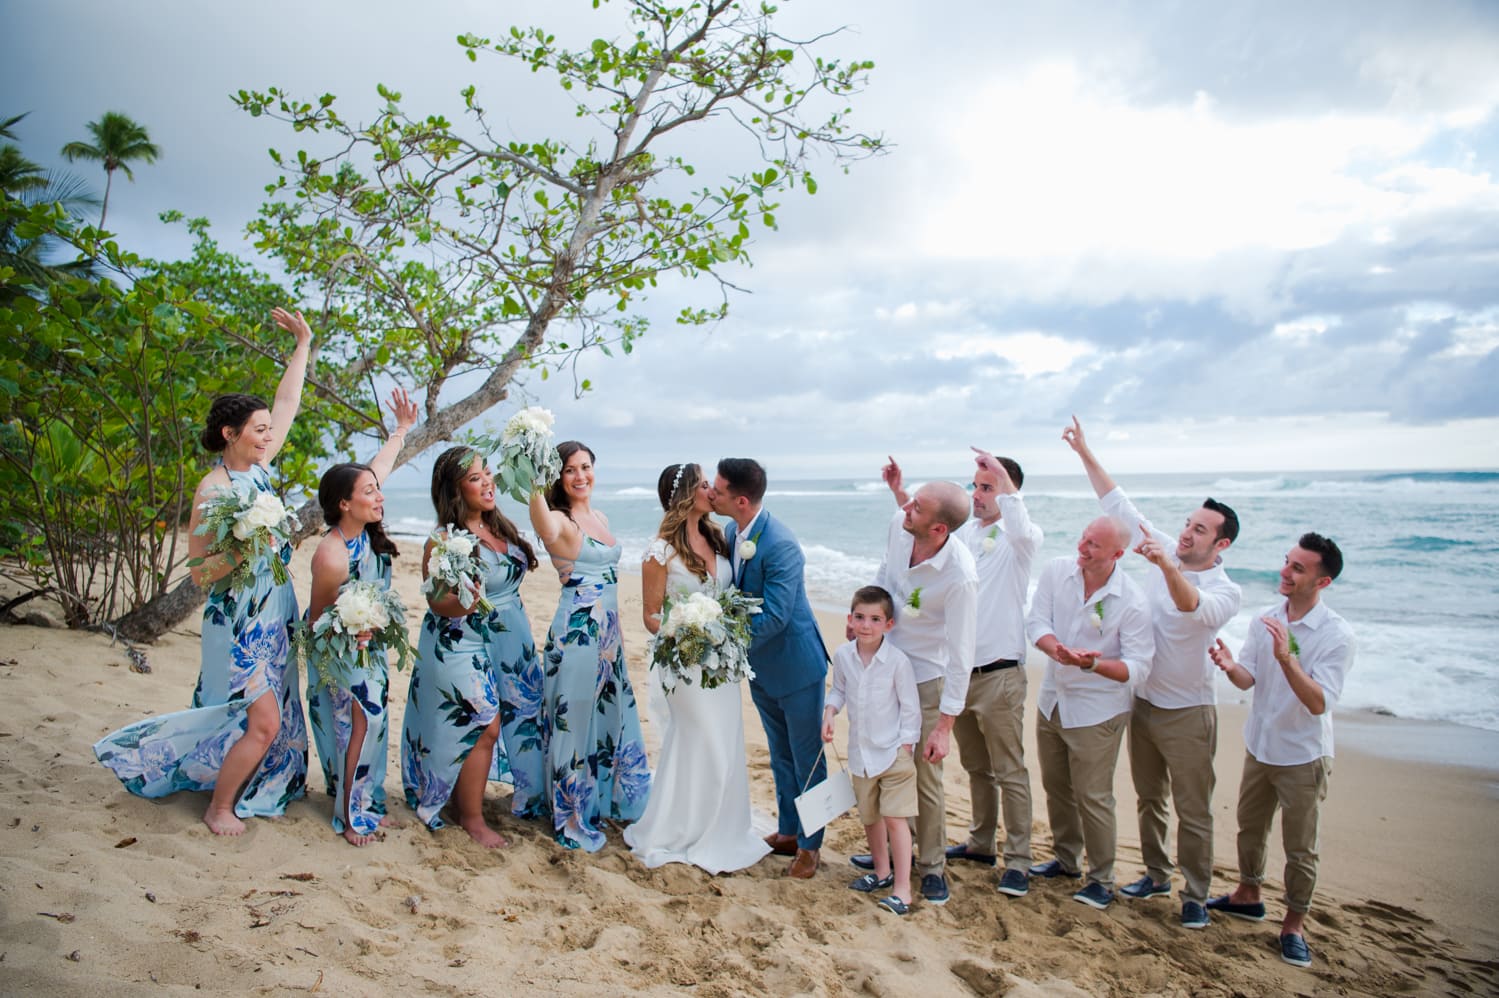 Puerto Rico wedding photographer Camille Fontanez shares a destination beach wedding at Villa De Zecheo in Rincon